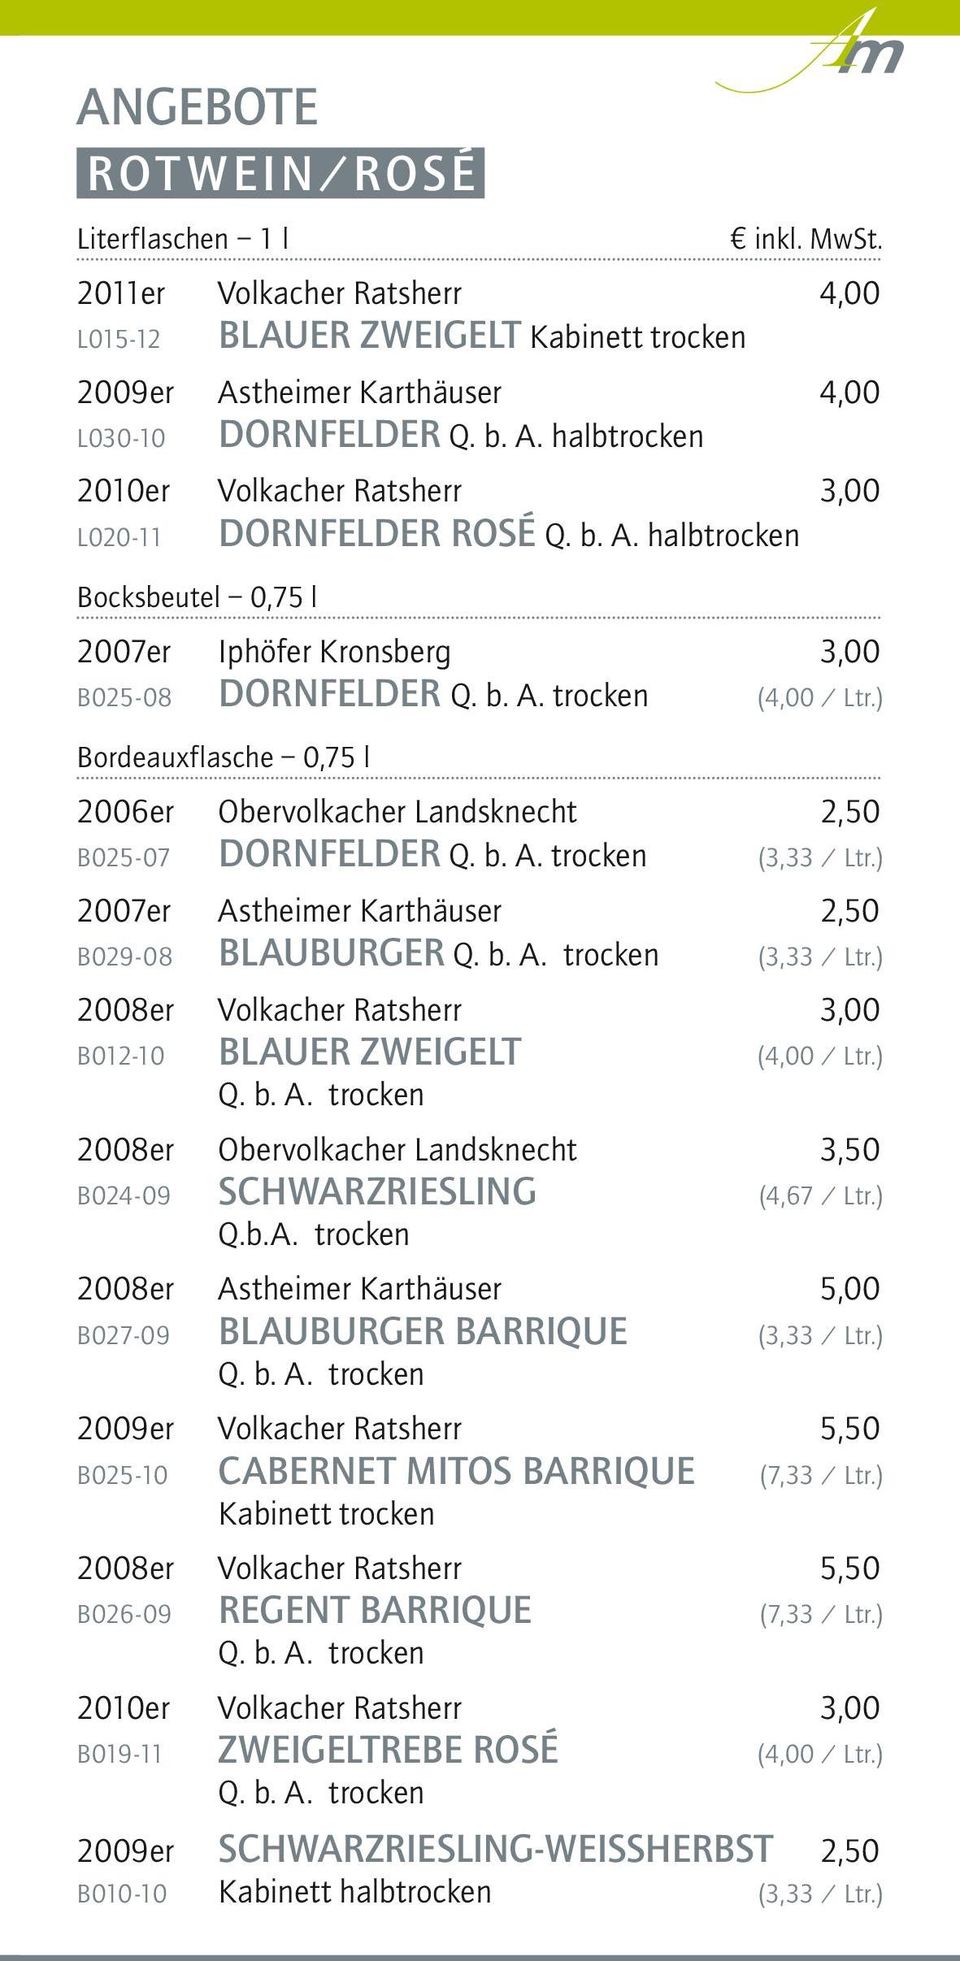 ) 2007er Astheimer Karthäuser 2,50 B029-08 BLAUBURGER Q. b. A. trocken (3,33 / Ltr.) 2008er Volkacher Ratsherr 3,00 B012-10 BLAUER ZWEIGELT (4,00 / Ltr.) Q. b. A. trocken 2008er Obervolkacher Landsknecht 3,50 B024-09 SCHWARZRIESLING (4,67 / Ltr.